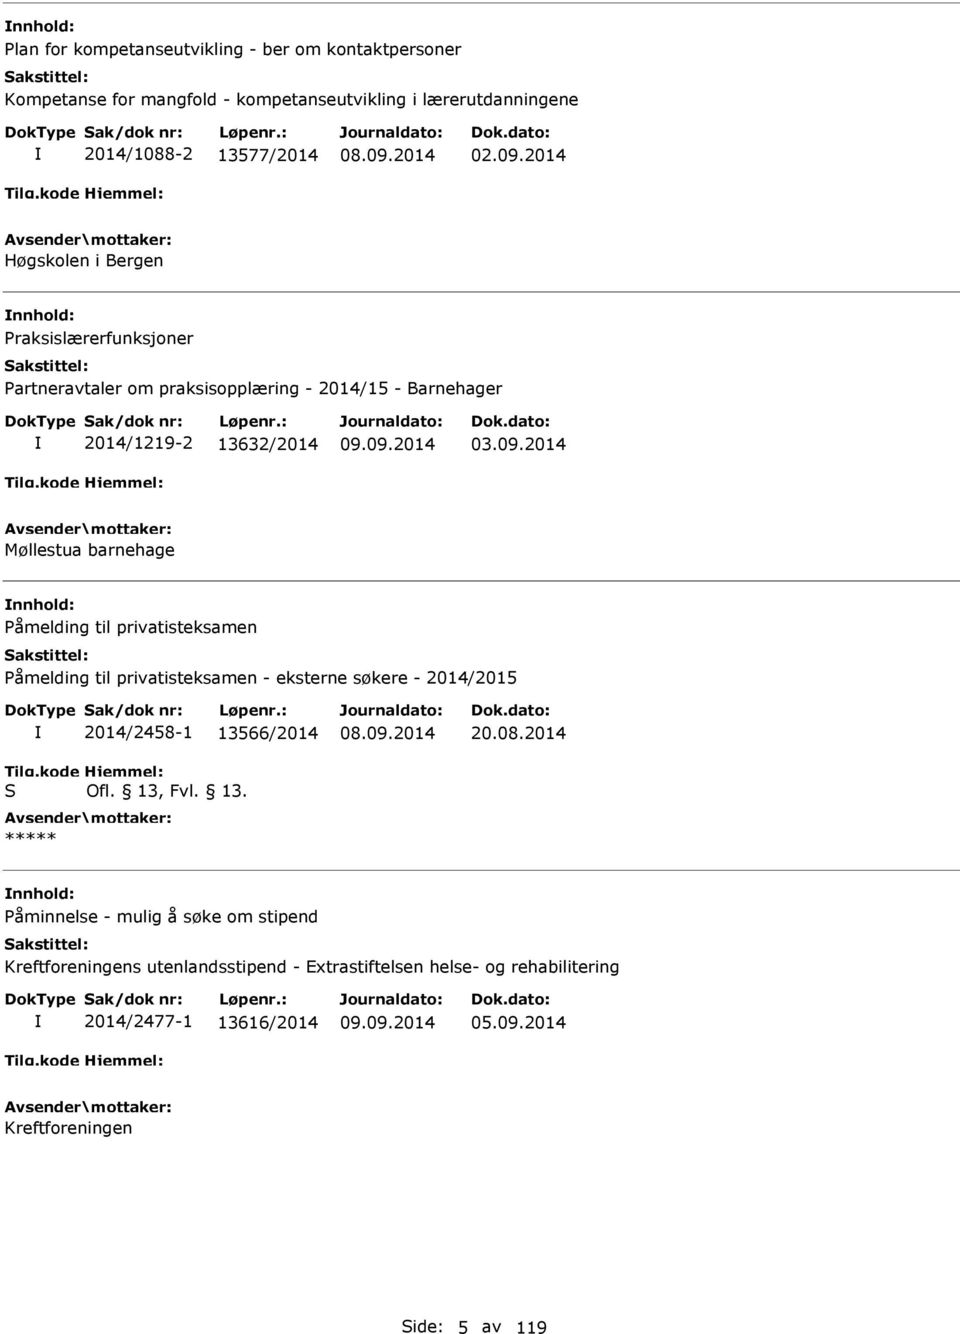 2014 Møllestua barnehage åmelding til privatisteksamen åmelding til privatisteksamen - eksterne søkere - 2014/2015 I S 2014/2458-1 13566/2014 Ofl. 13, Fvl. 13. 20.08.